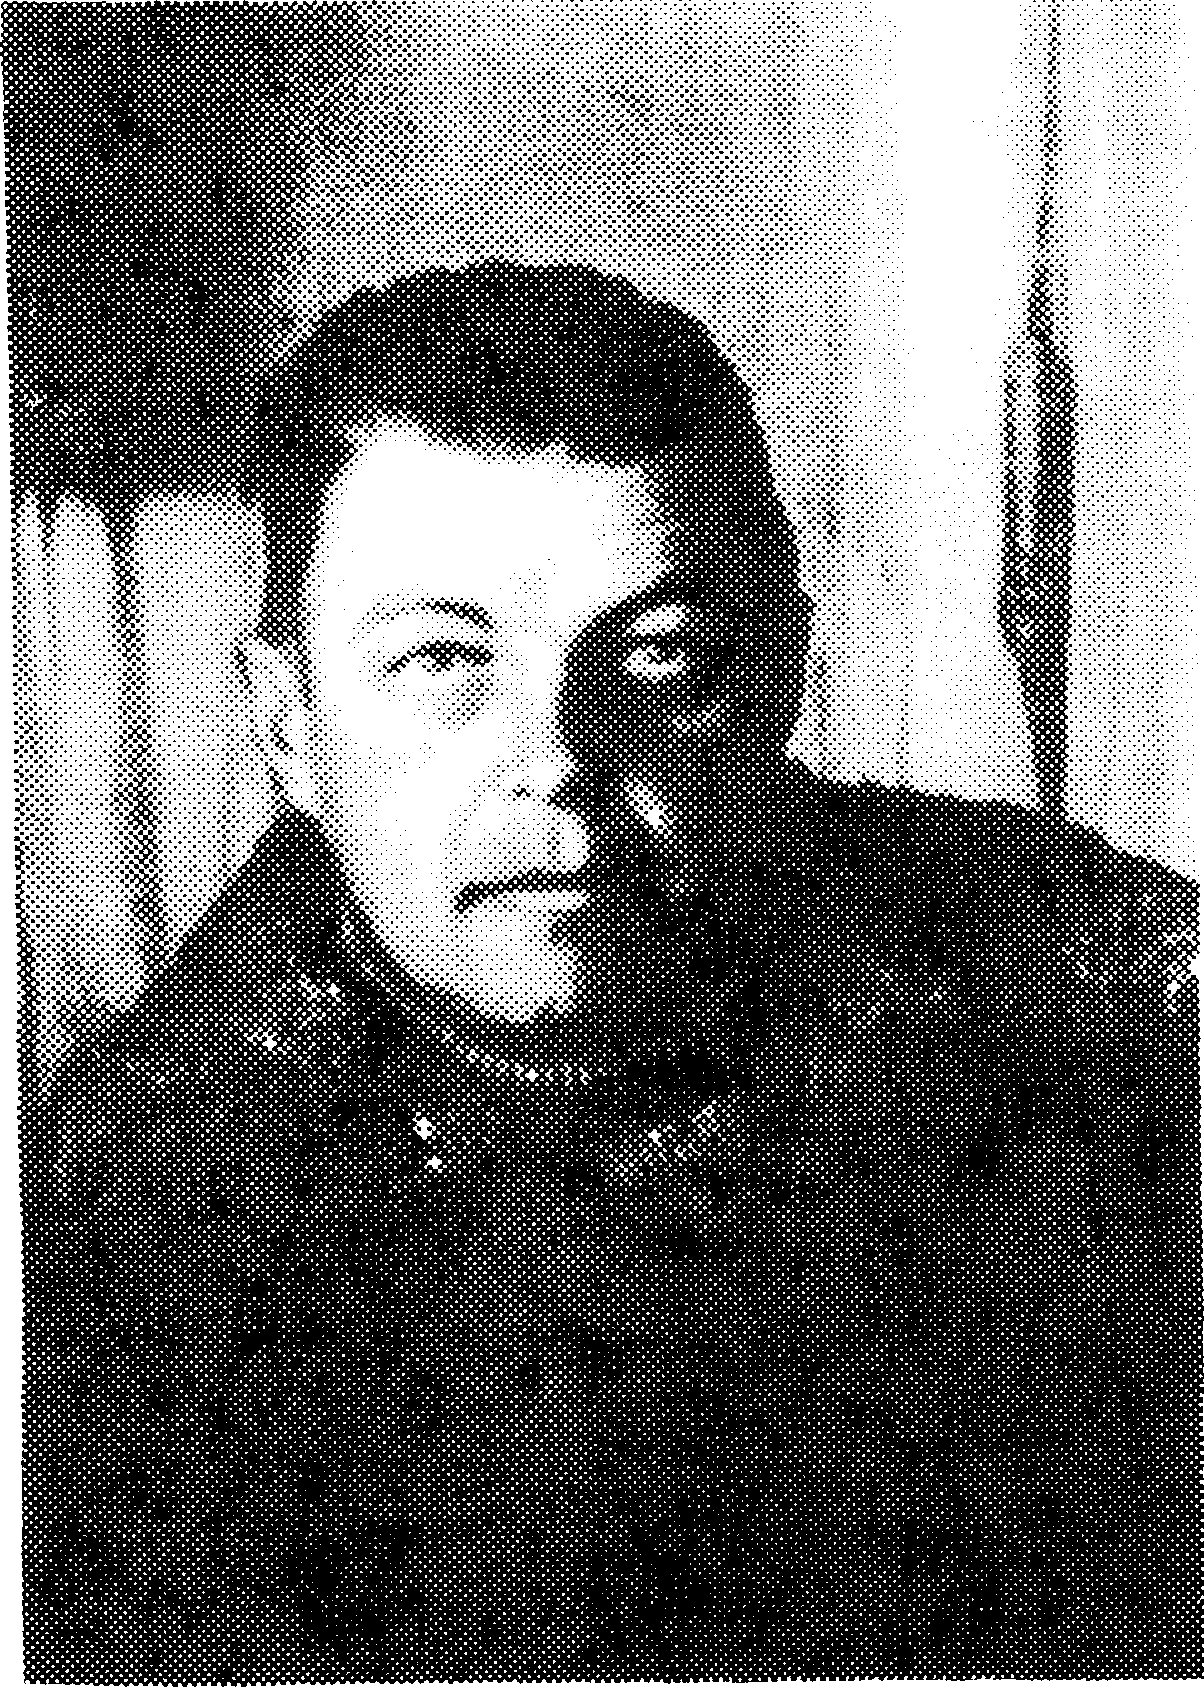 И.А. Ефремов на базе Монгольской палеонтологической экспедиции. Улан-Батор (1946 г.)